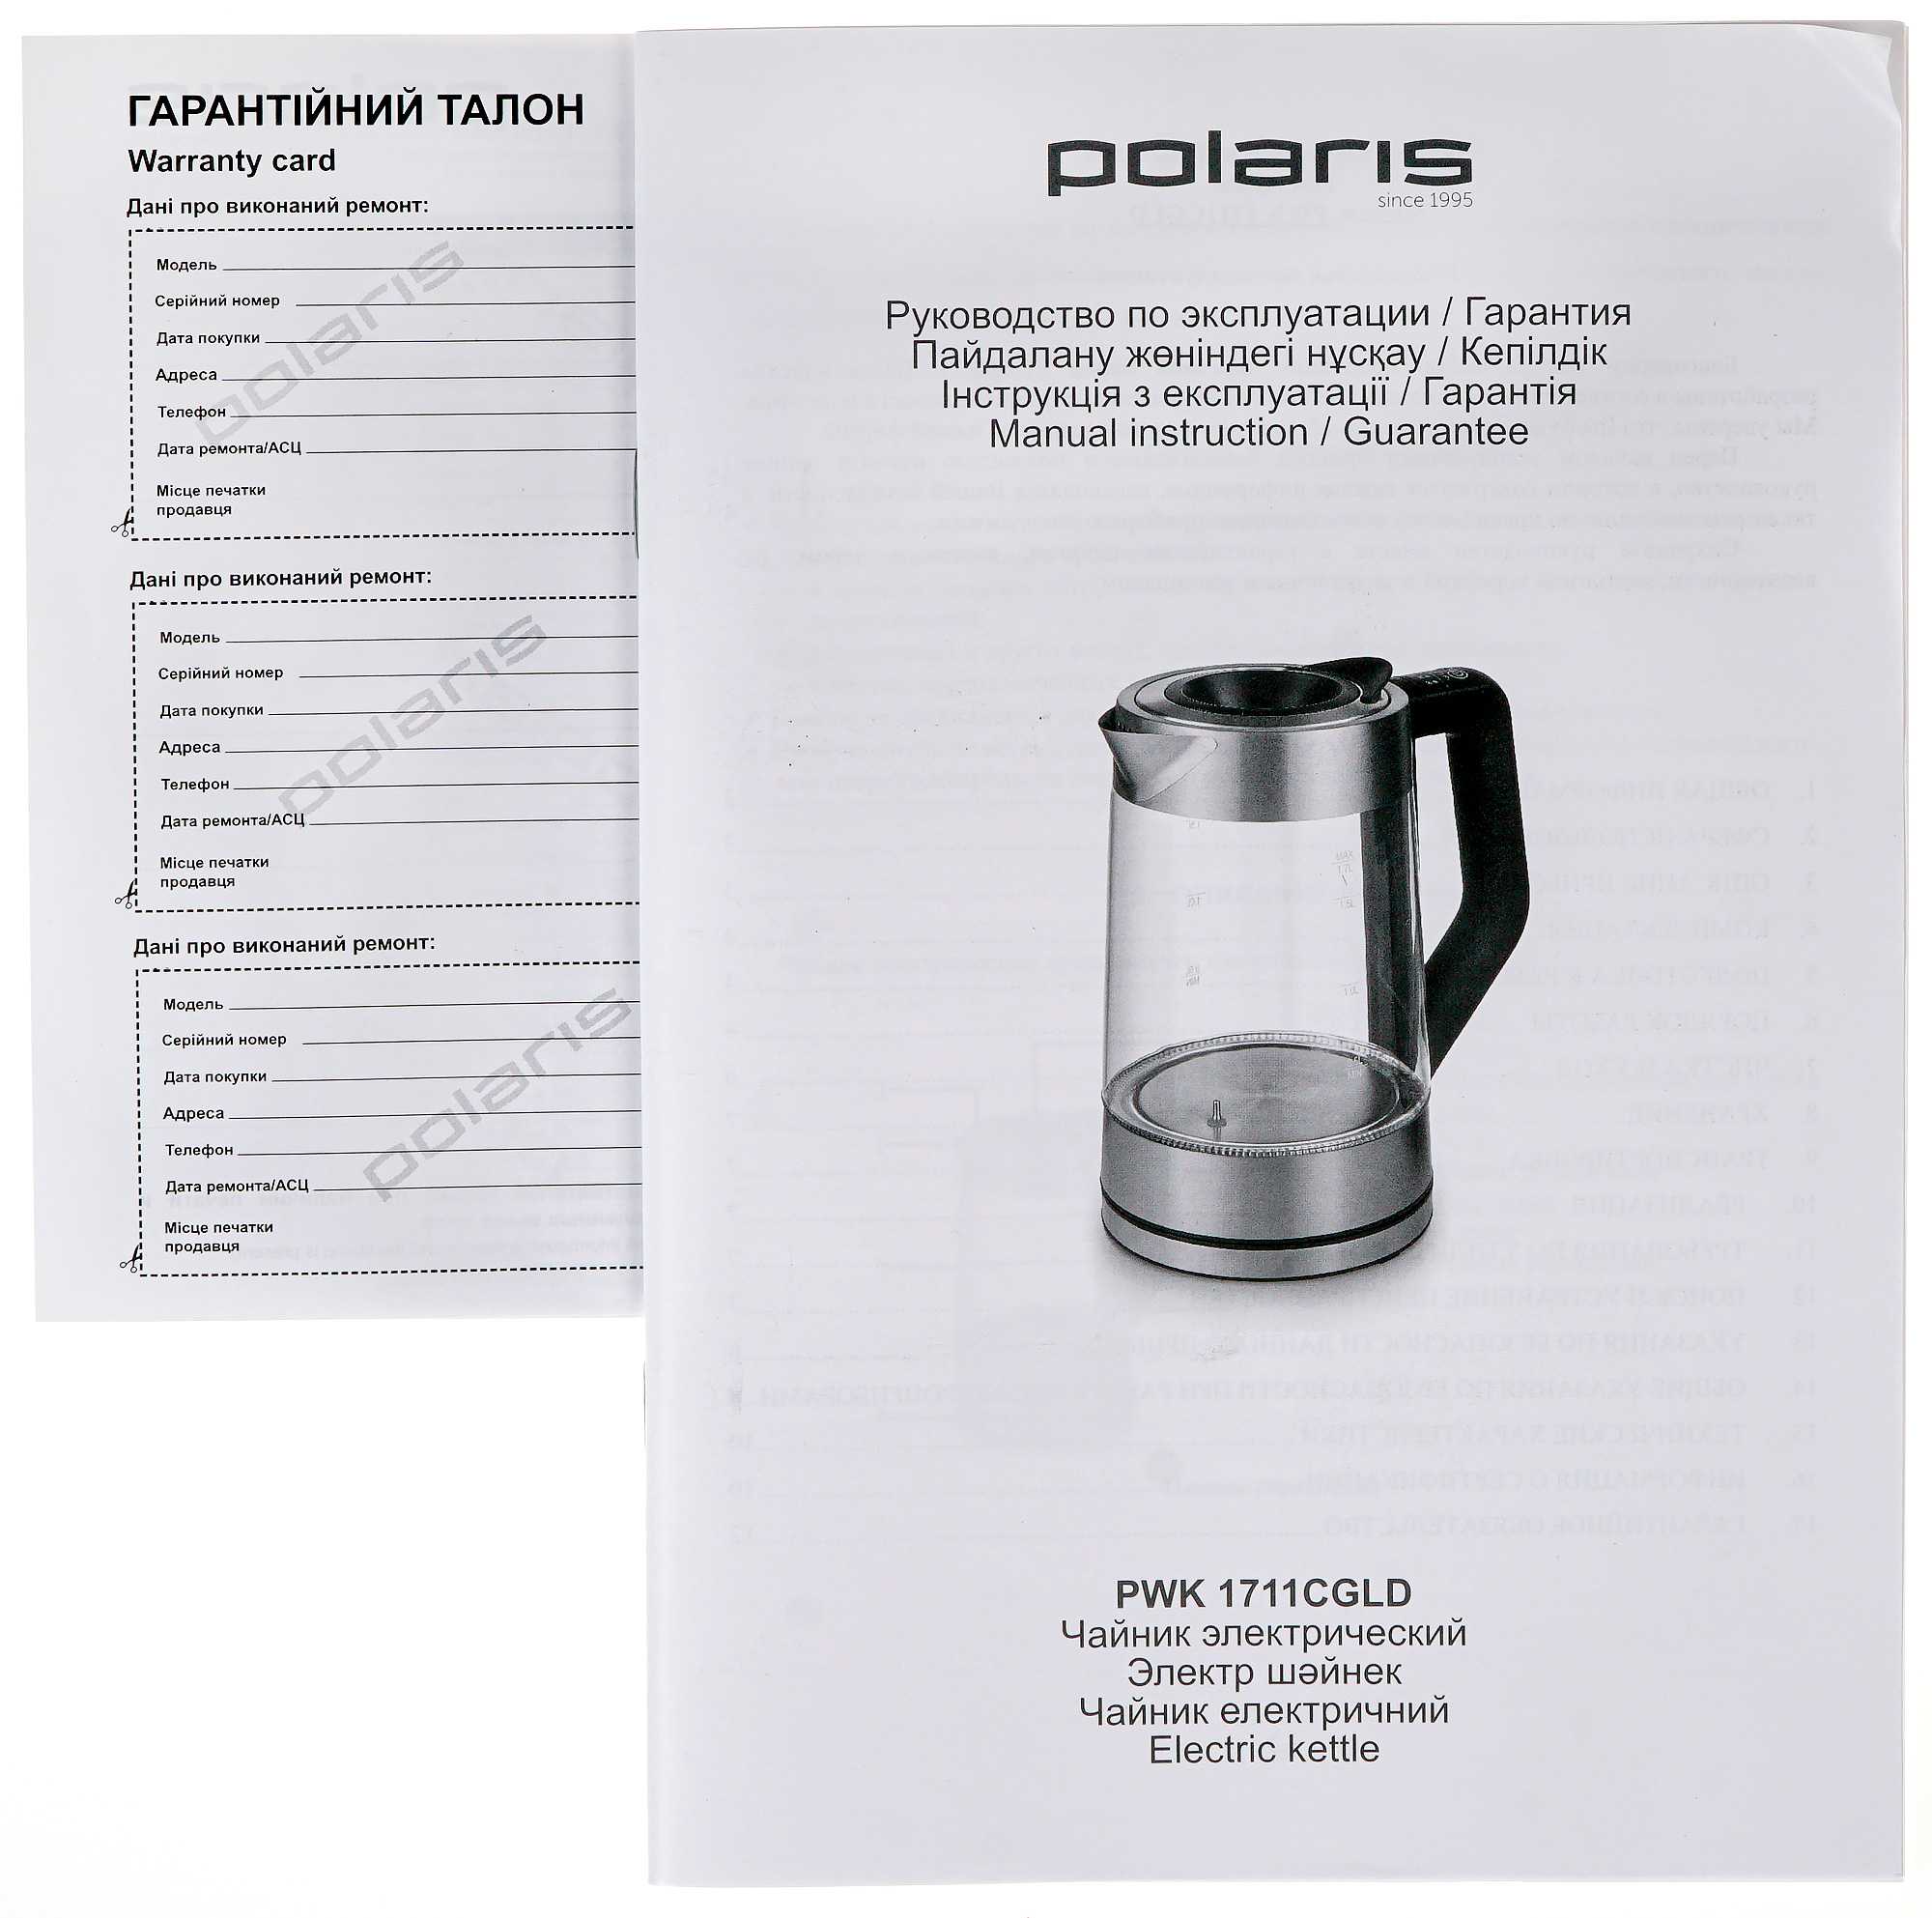 Швейцарский производитель электроники Polaris представил новый электрический чайник PWK 1711CGLD с поддержкой технологии WATERWAY PRO Суть в том что эта модель